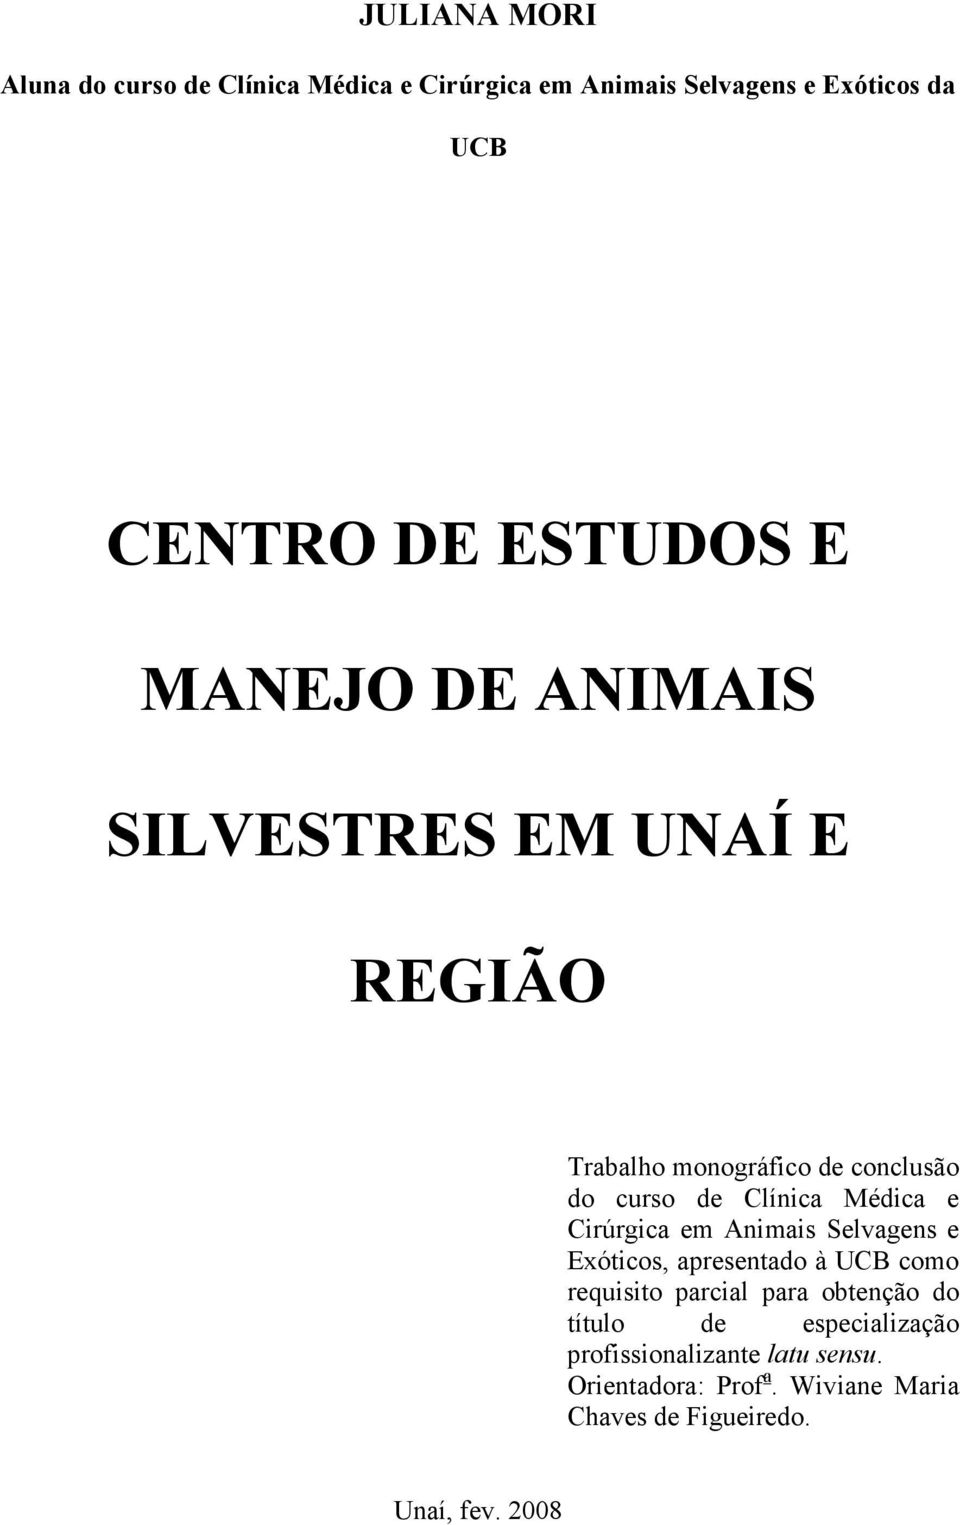 Médica e Cirúrgica em Animais Selvagens e Exóticos, apresentado à UCB como requisito parcial para obtenção do